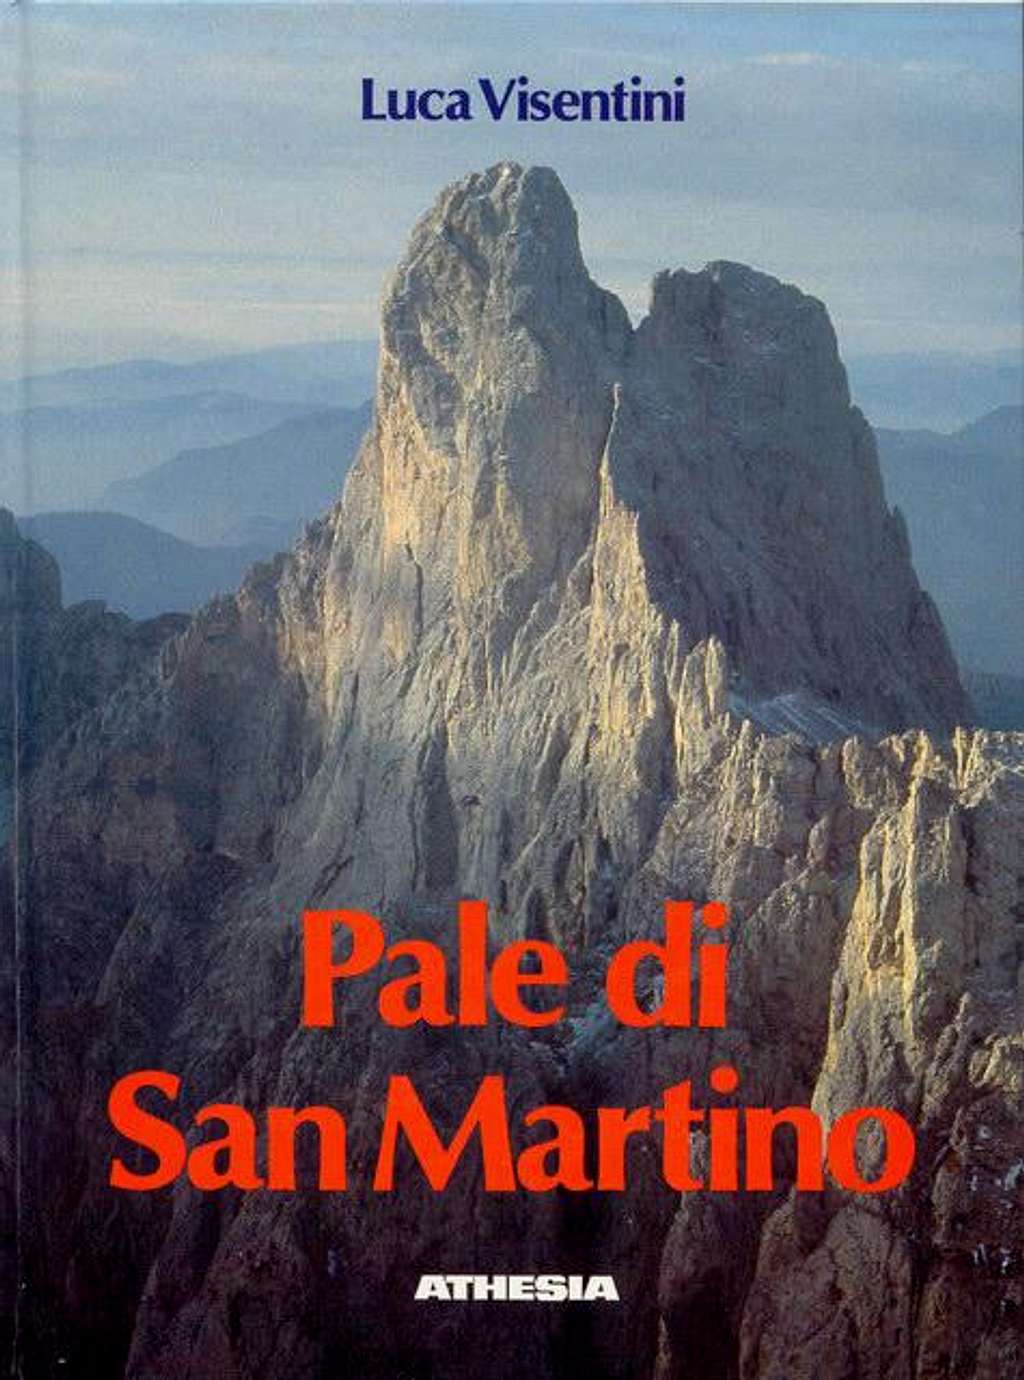 Book: Pale di San Martino by Luca Visentini